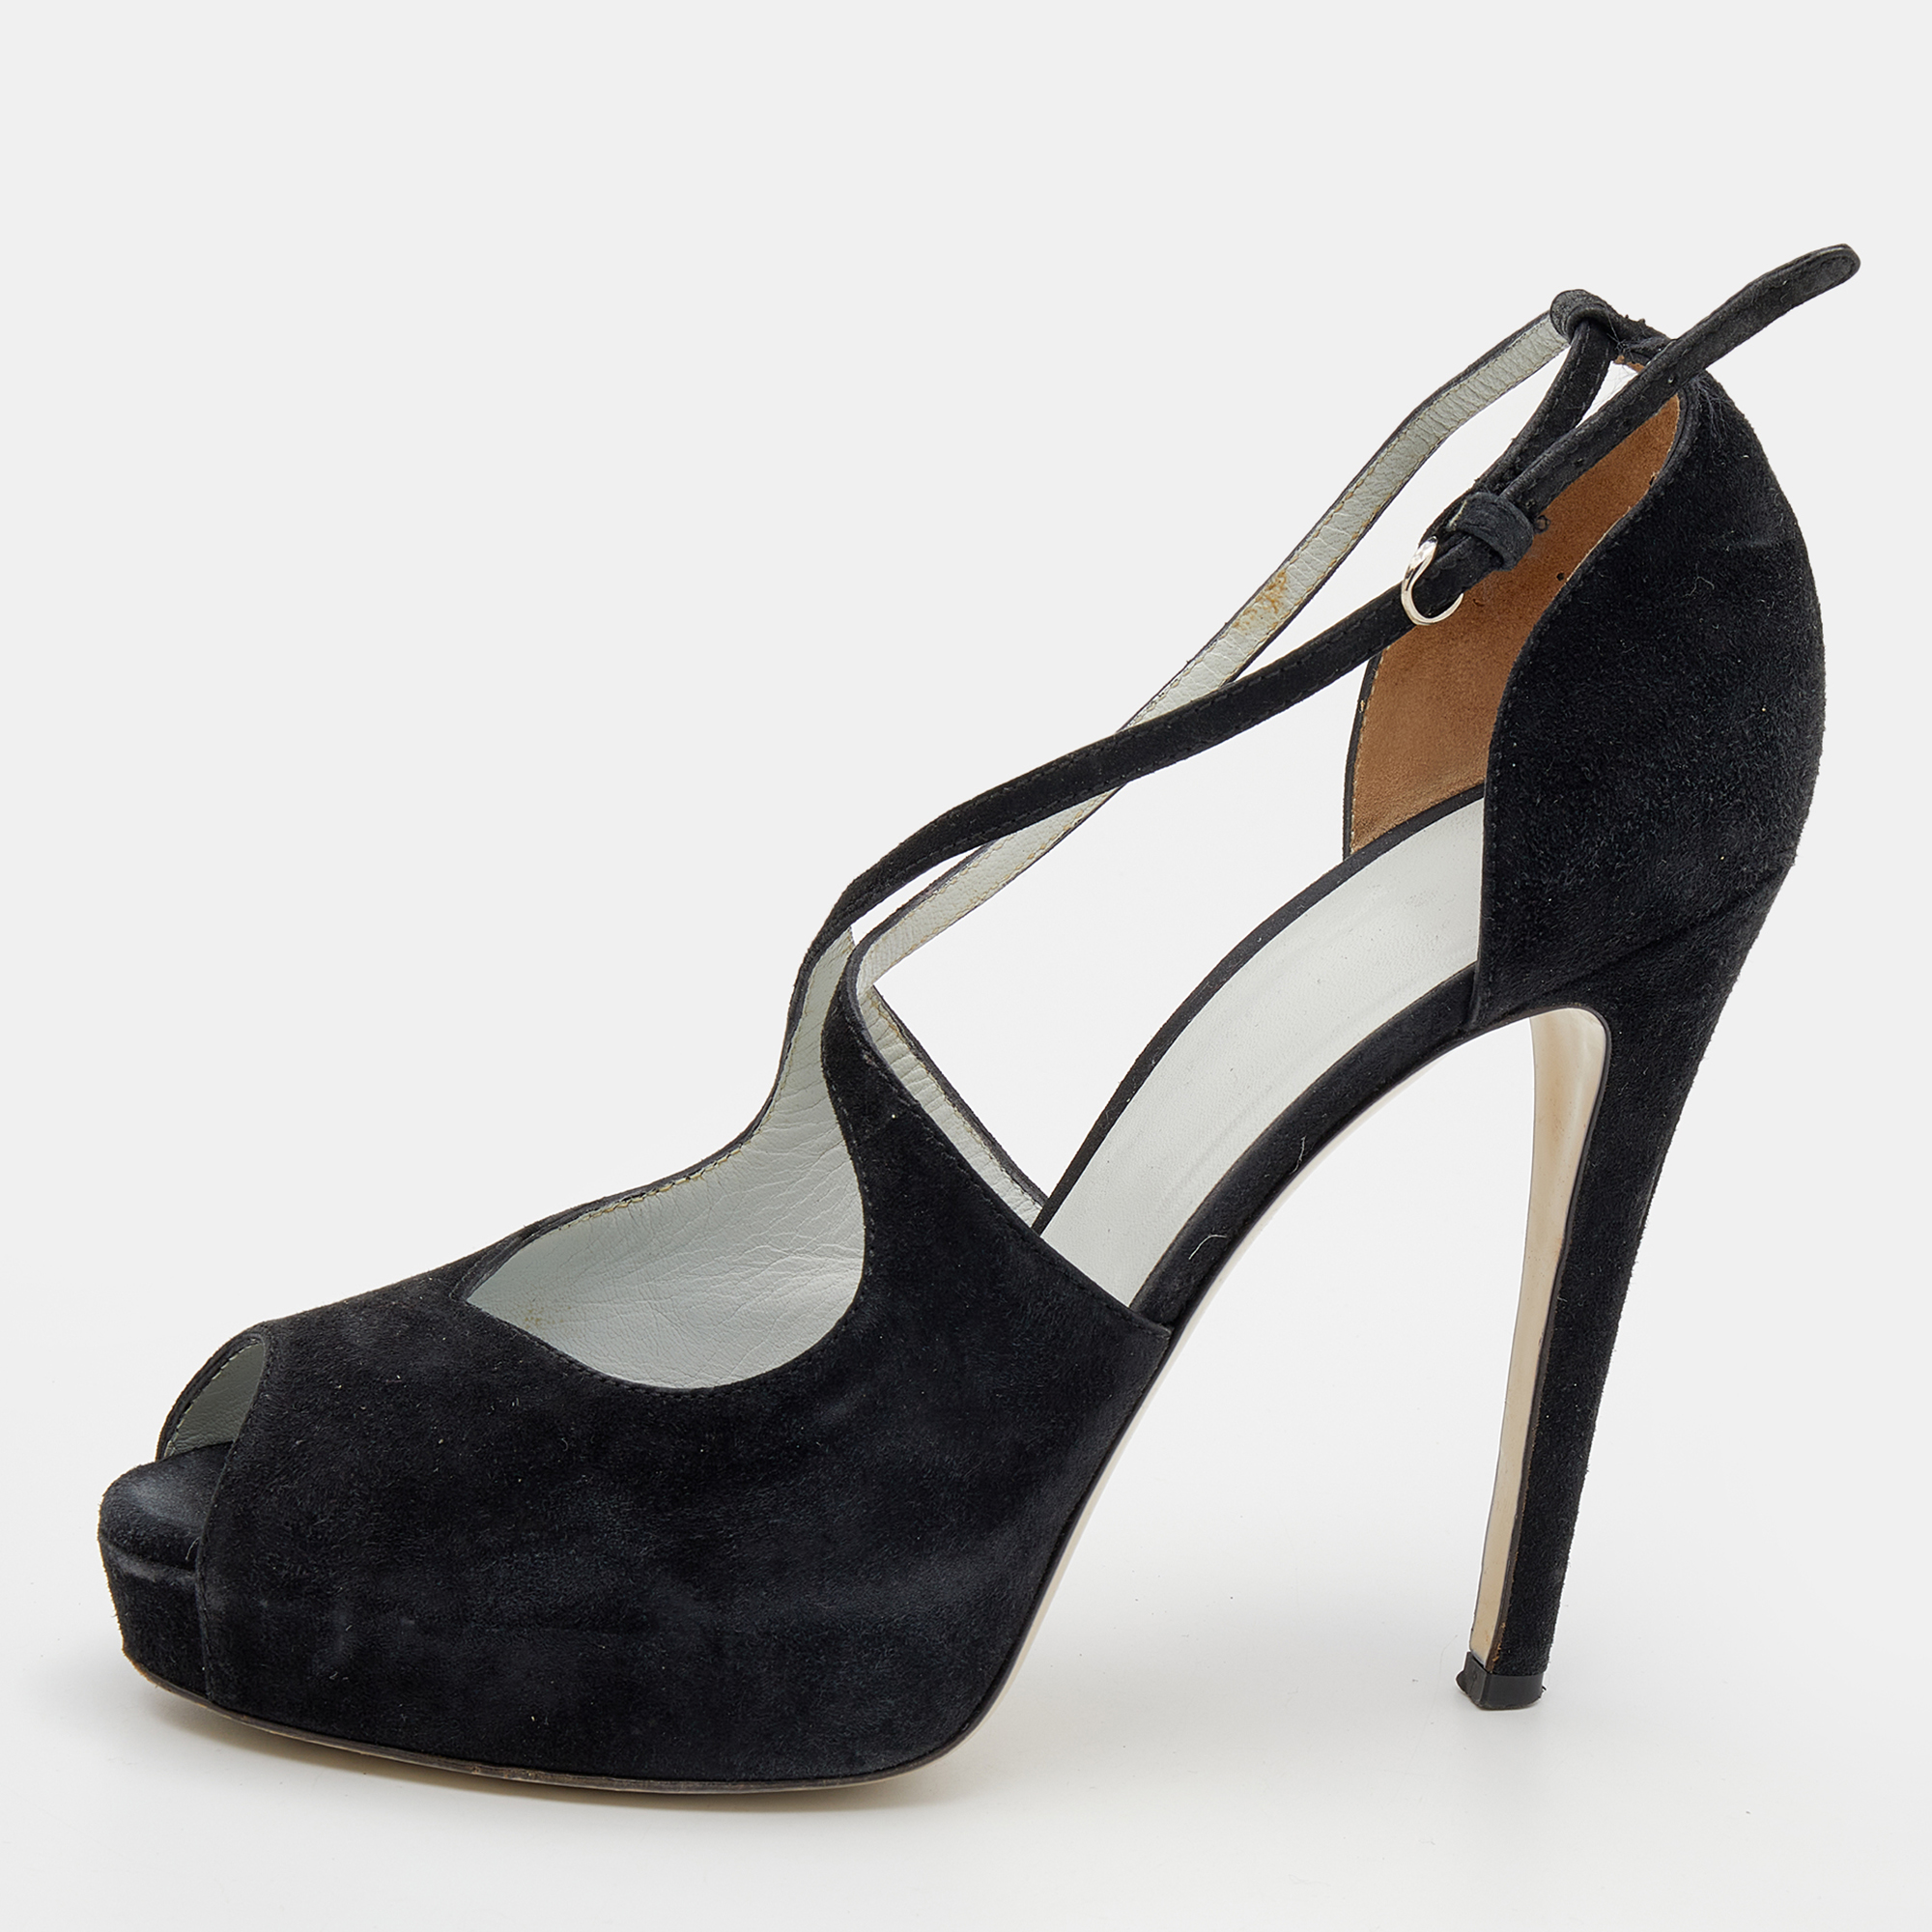 D&g black suede platform ankle strap sandals size 39